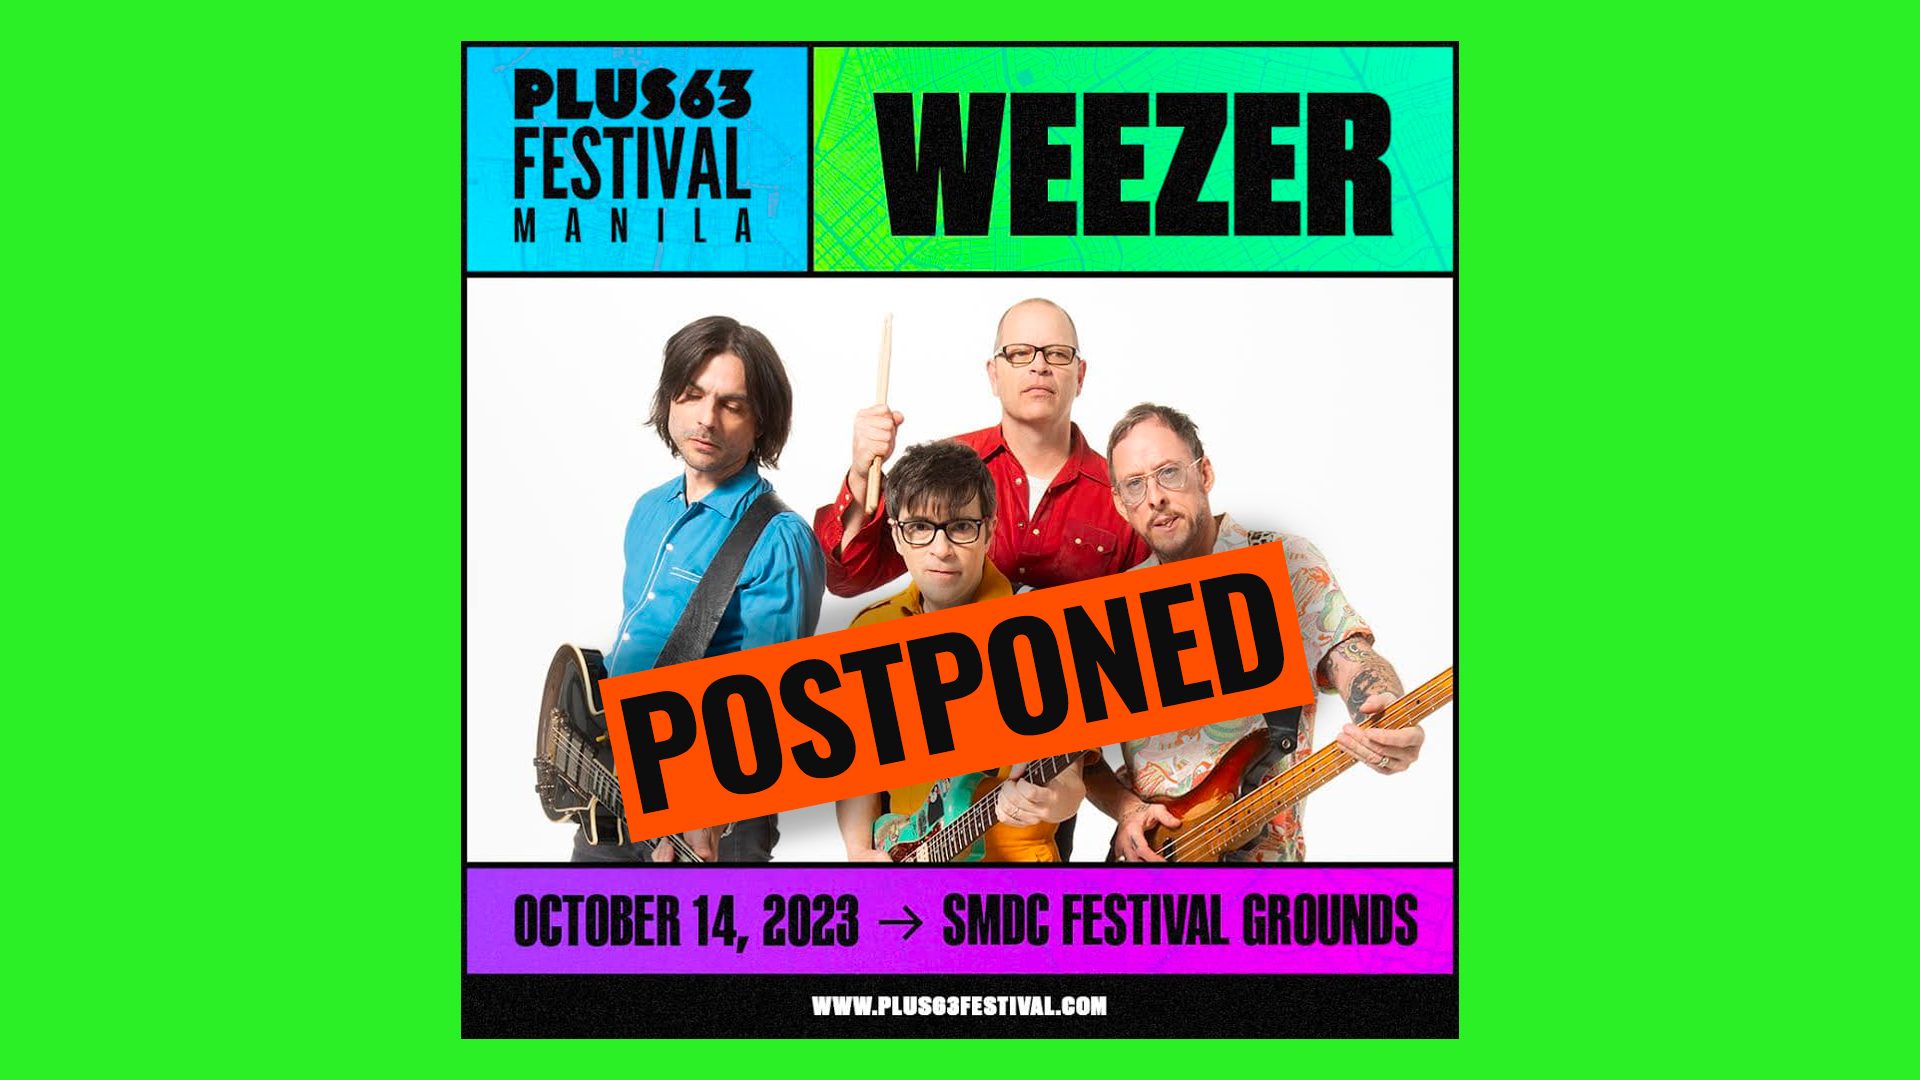 Sorry, Weezer fans – Plus63 Festival Manila 2023 is postponed